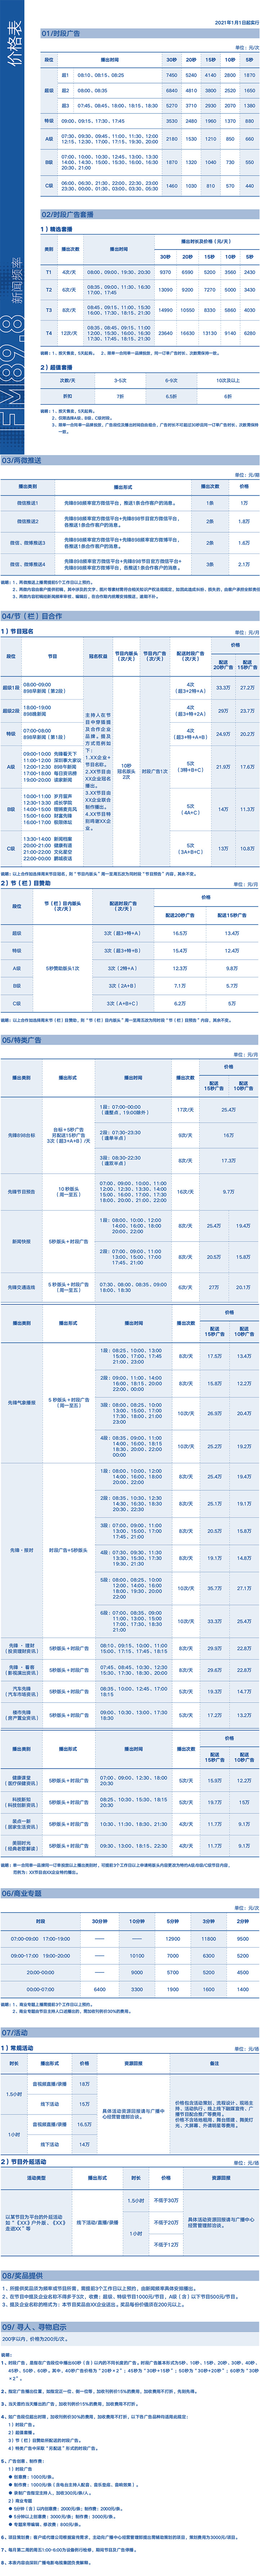 2021深圳人民广播电台新闻频率 FM89.8广告报价表.jpg